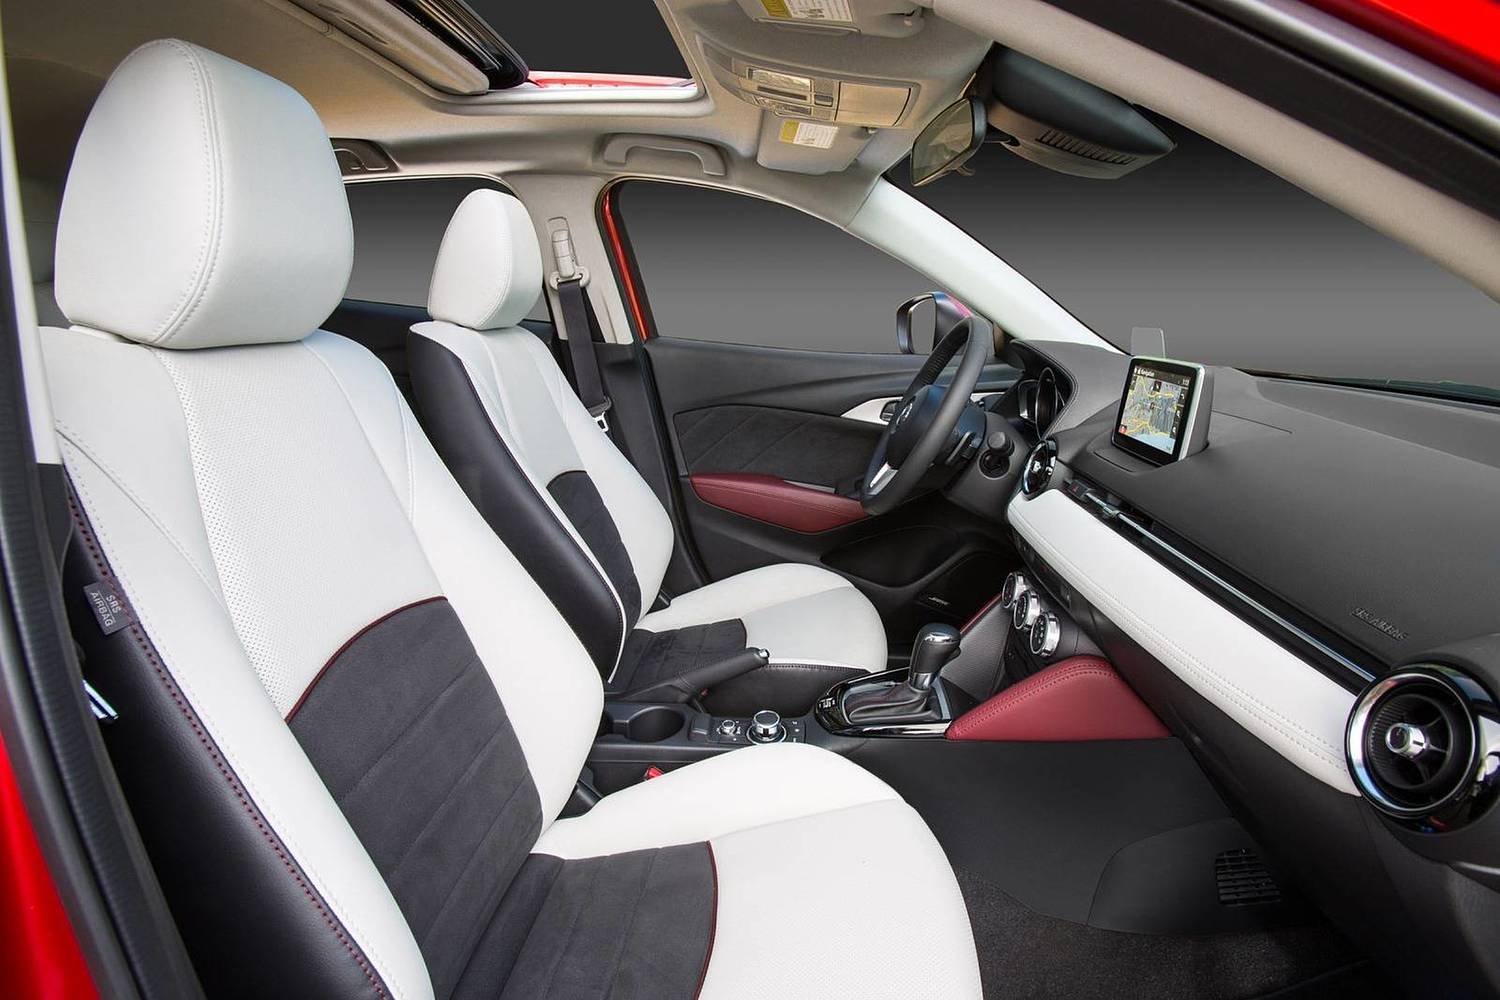 2017 Mazda CX-3 Grand Touring 4dr SUV Interior Shown